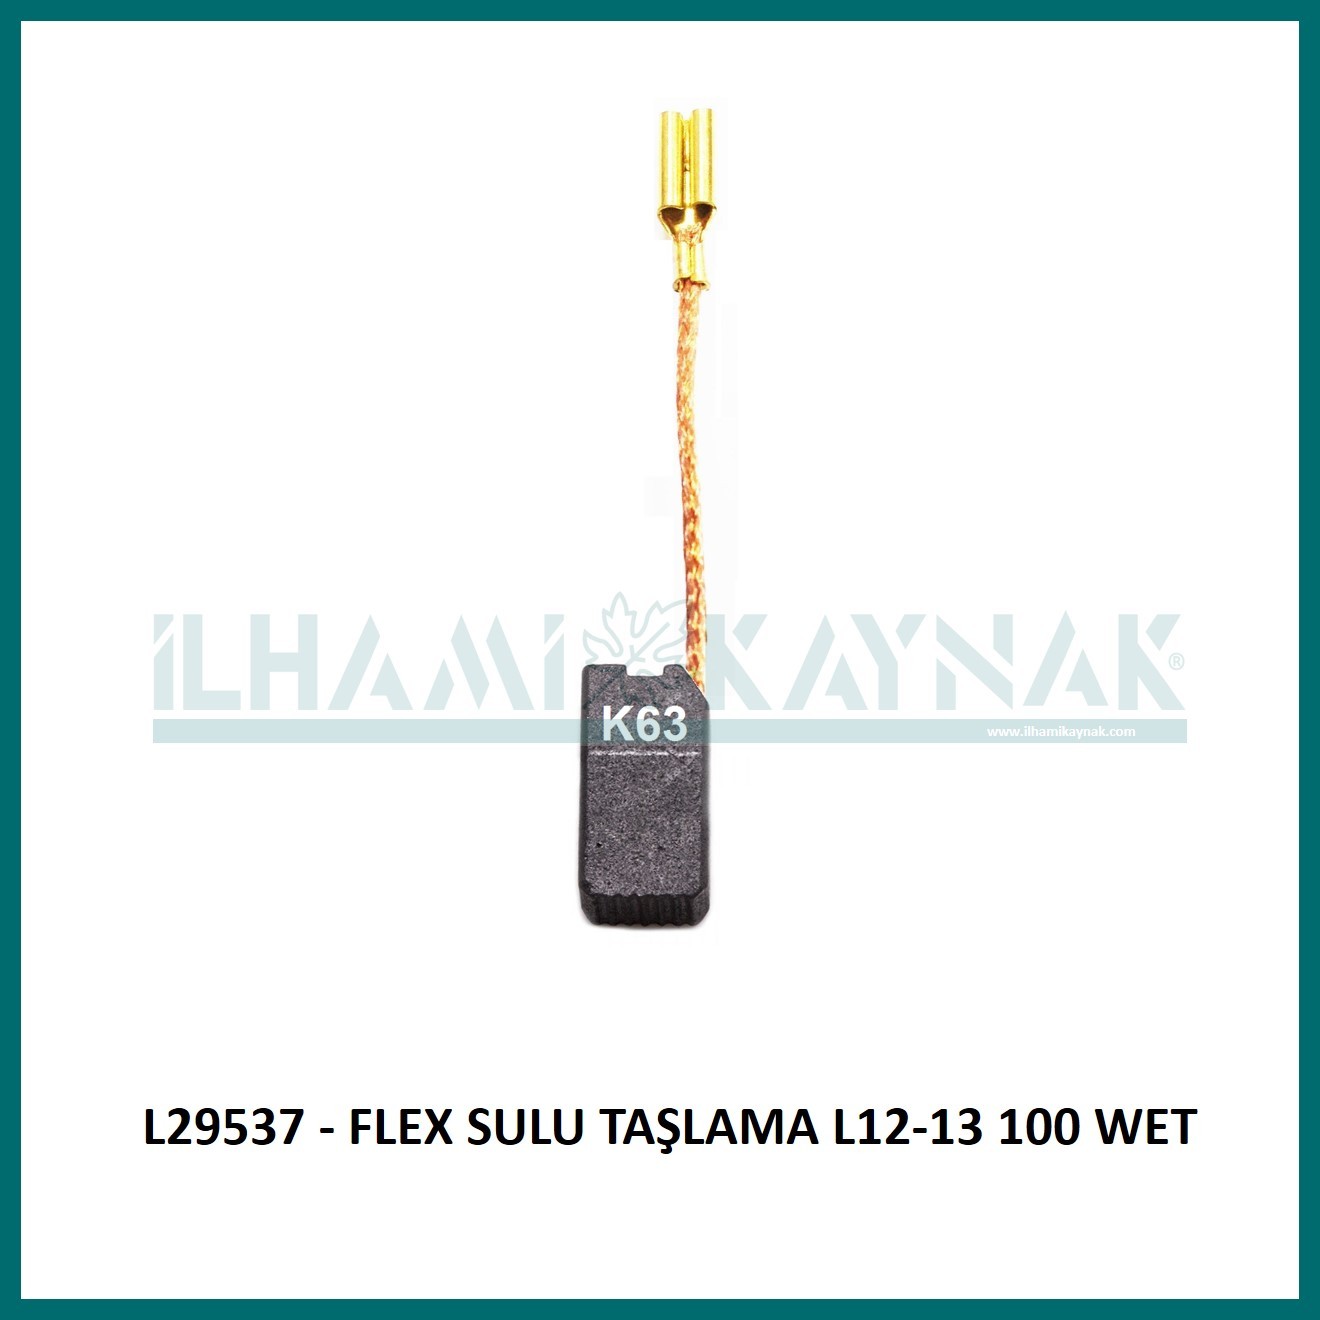 L29537 - FLEX SULU TAŞLAMA L12-13 100 WET 6.3*7*15  mm - 100 Adet